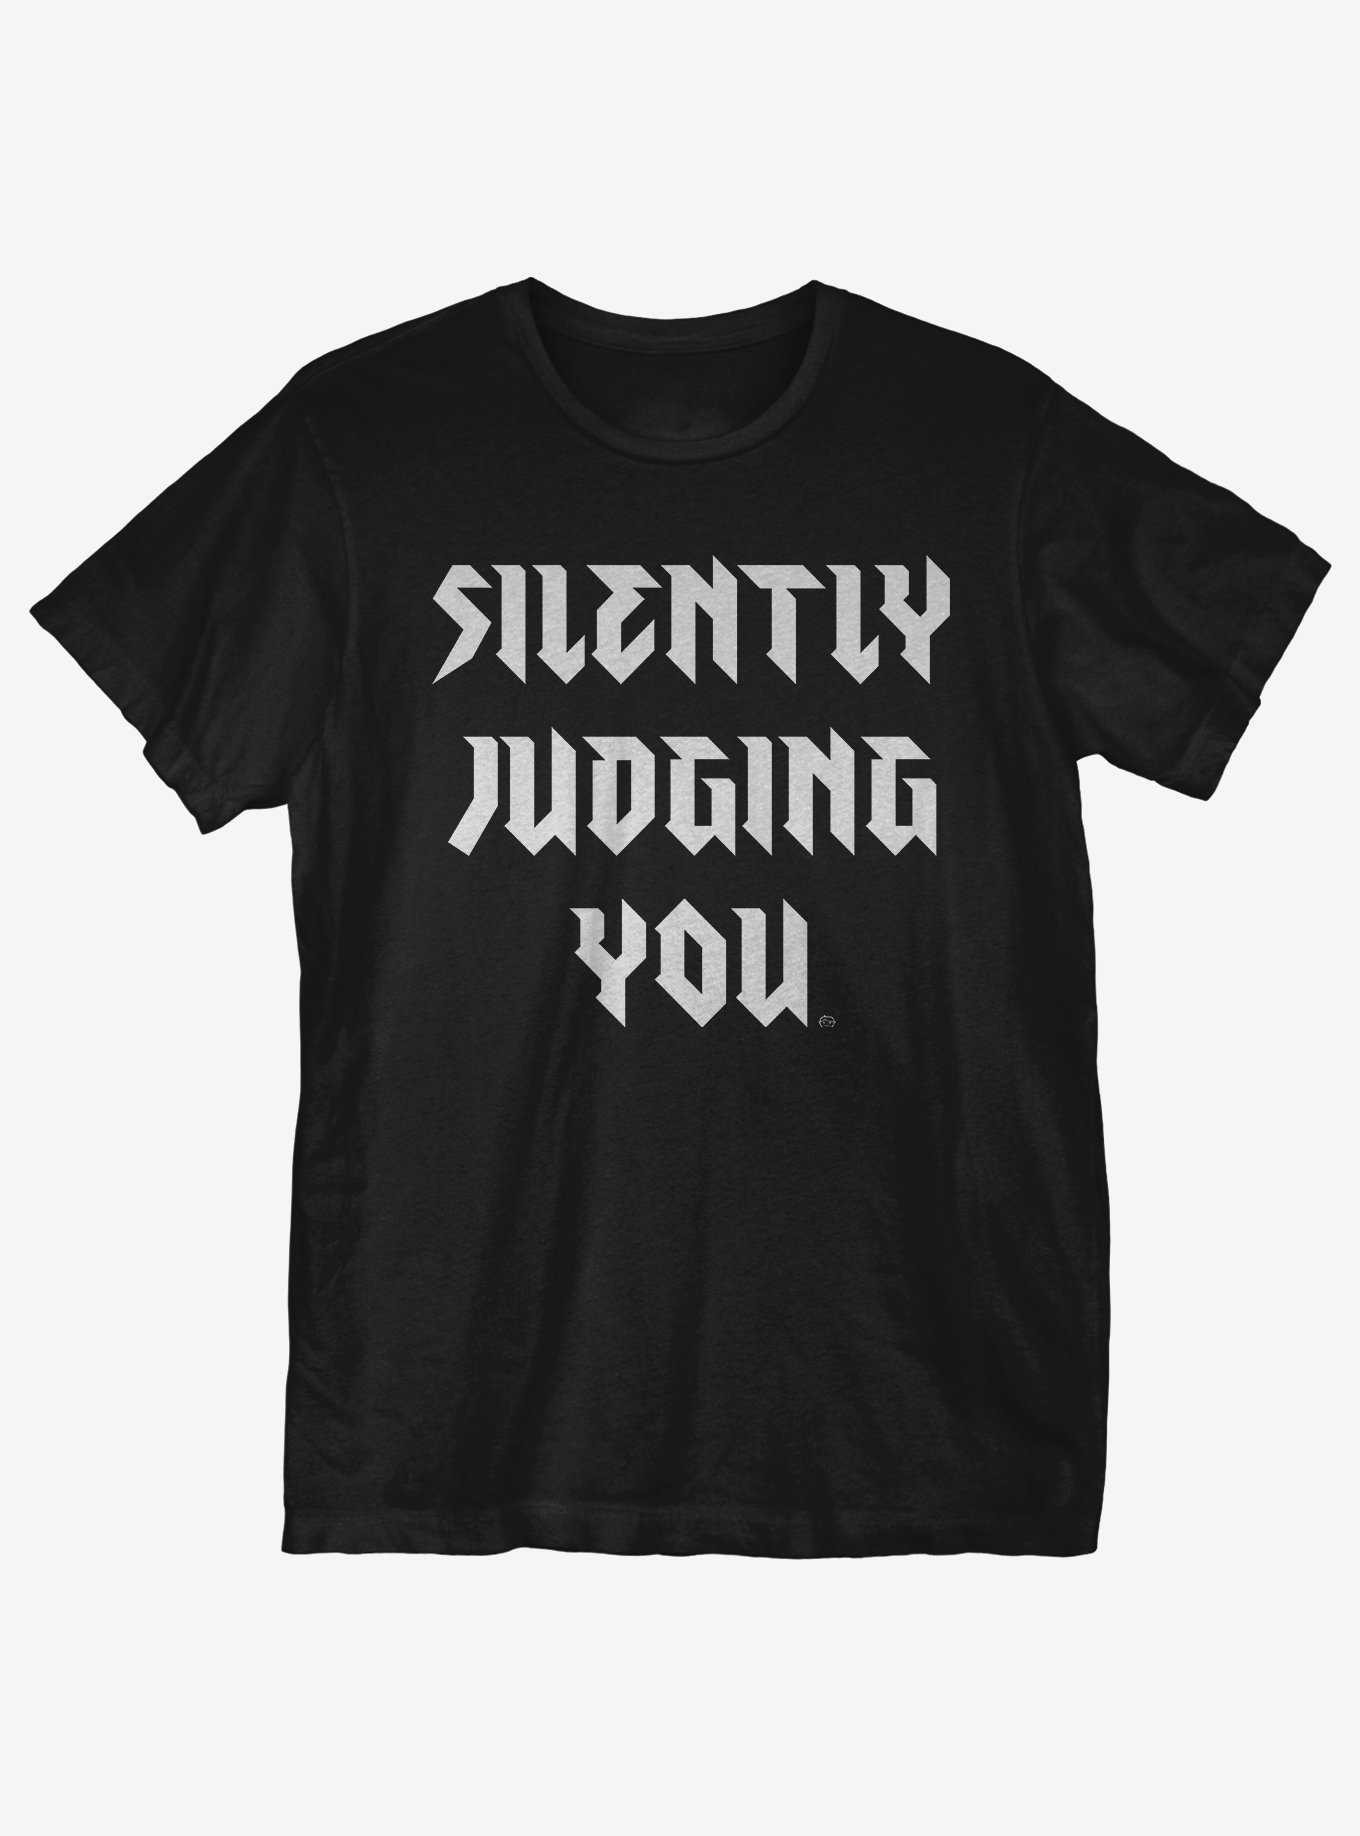 Silently Judging You Alt T-Shirt, , hi-res